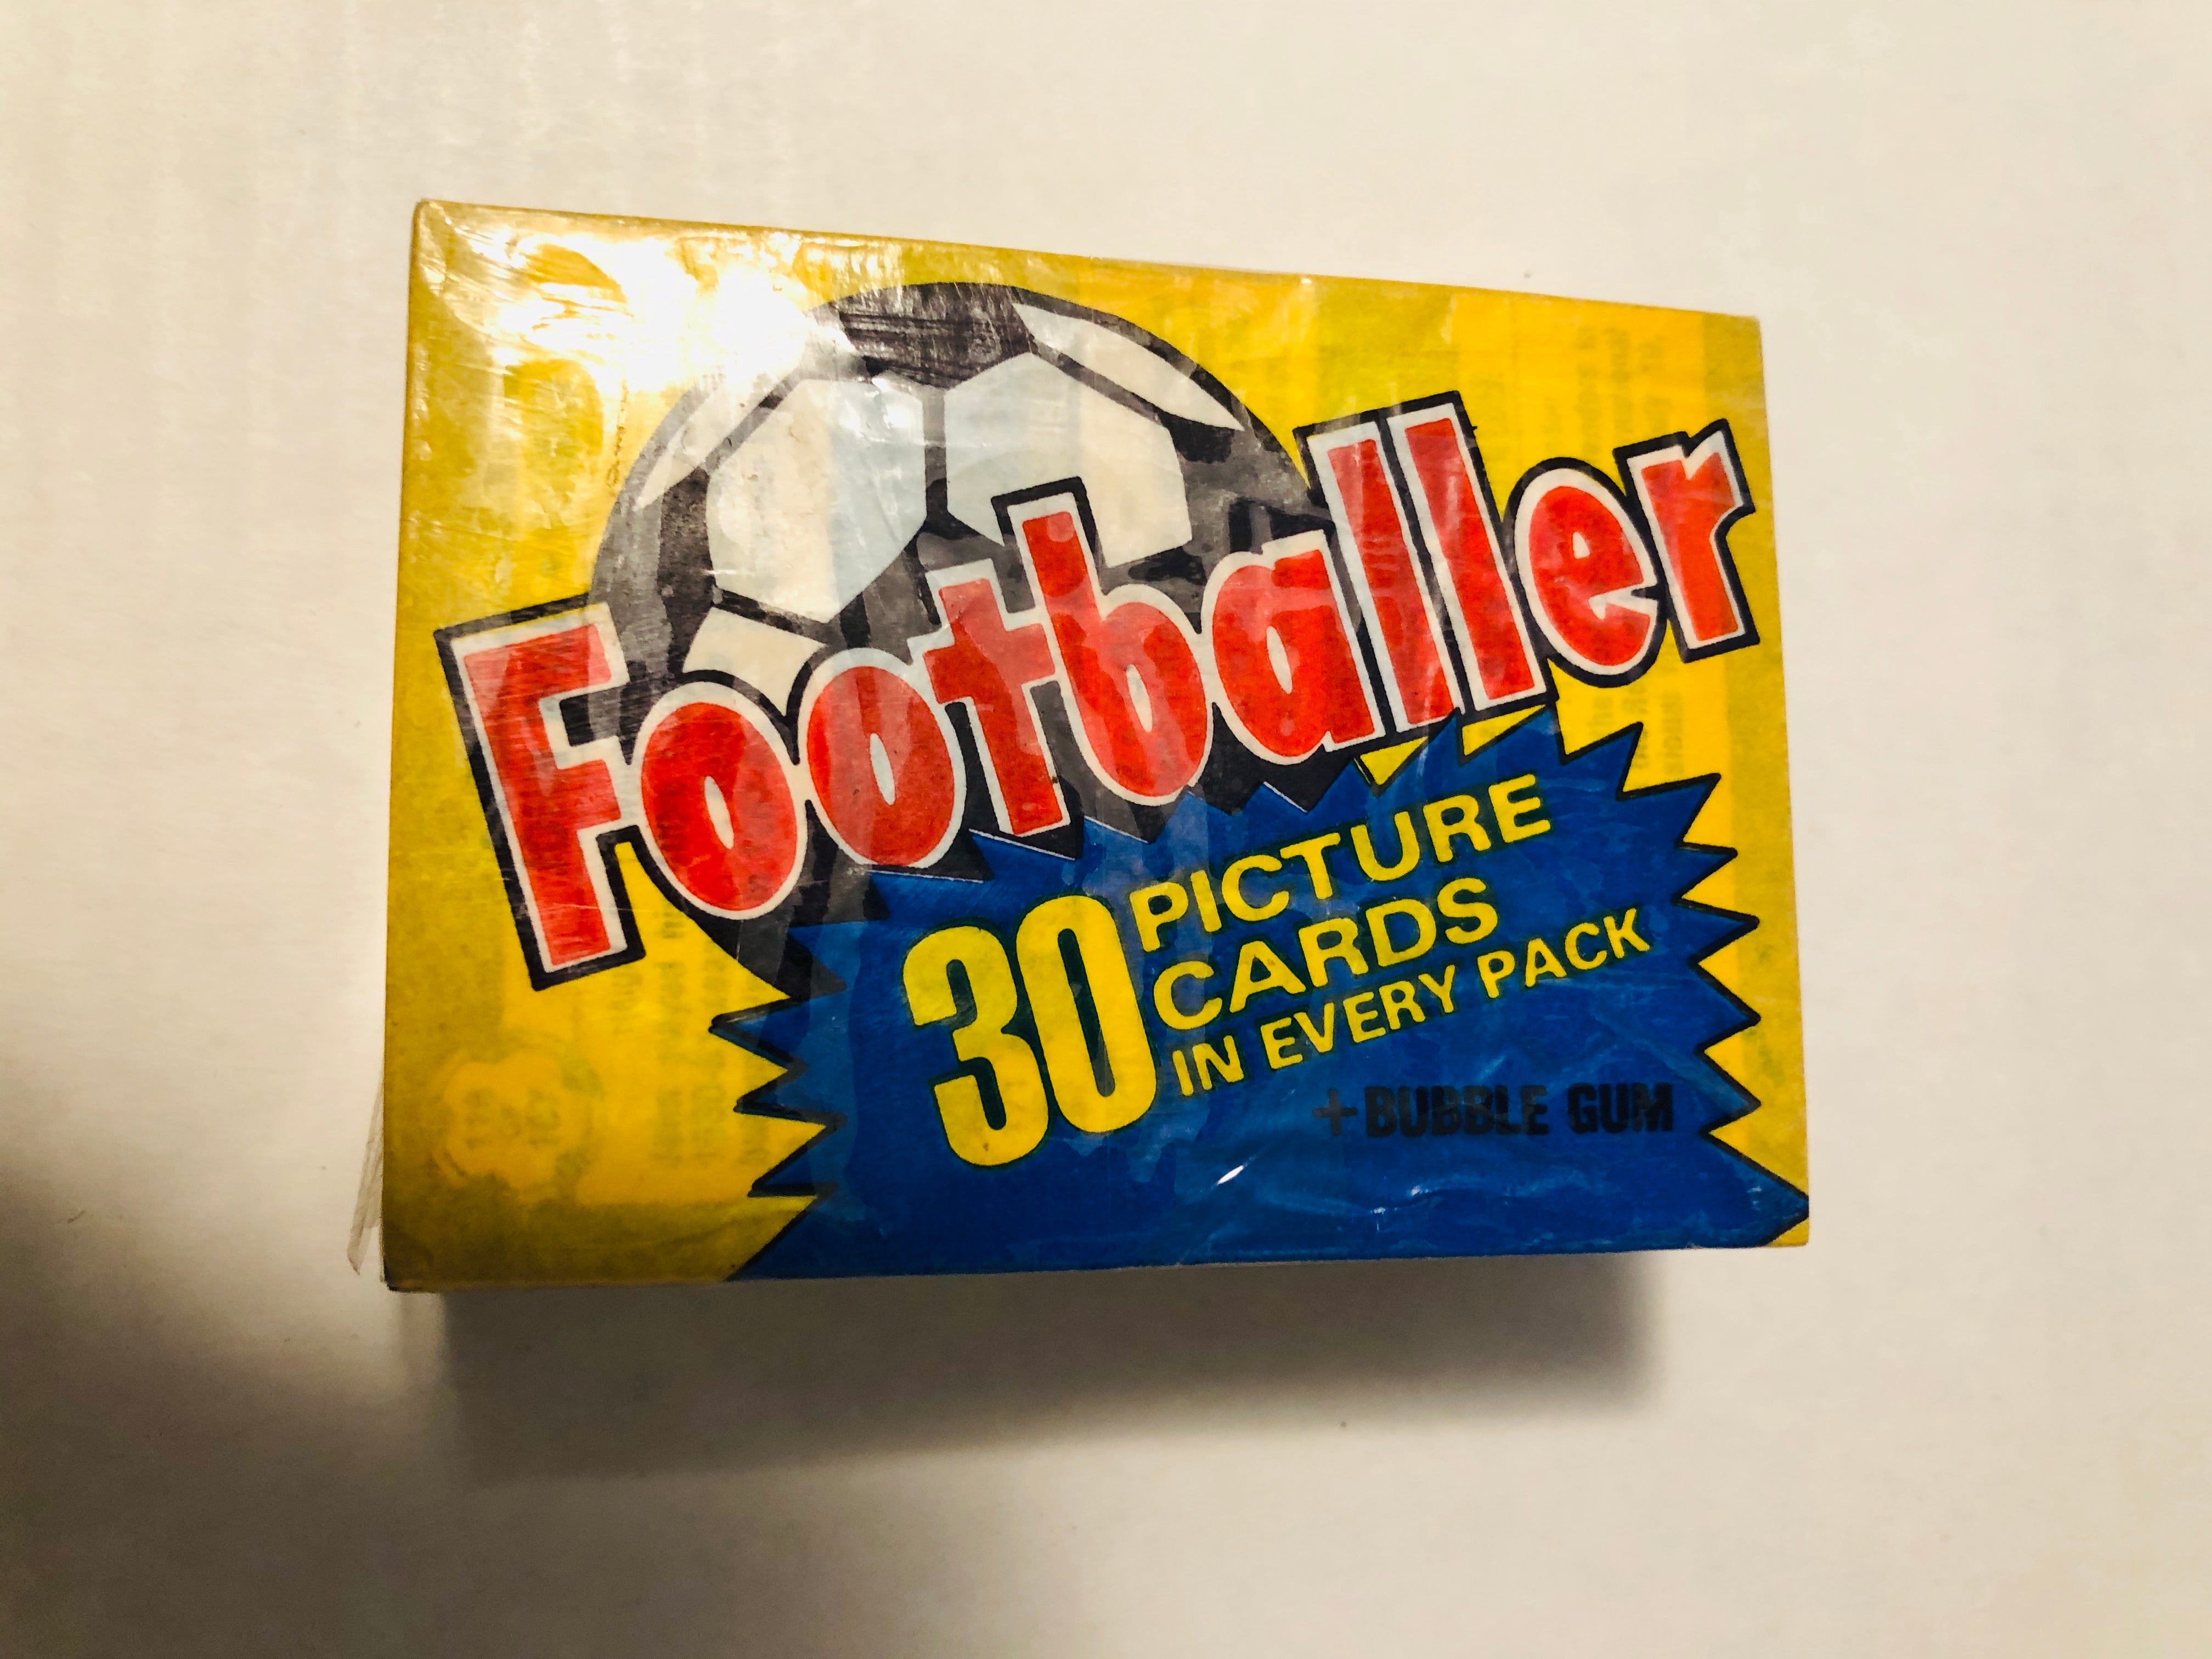 Soccer Footballer rare vintage cards set 1980s